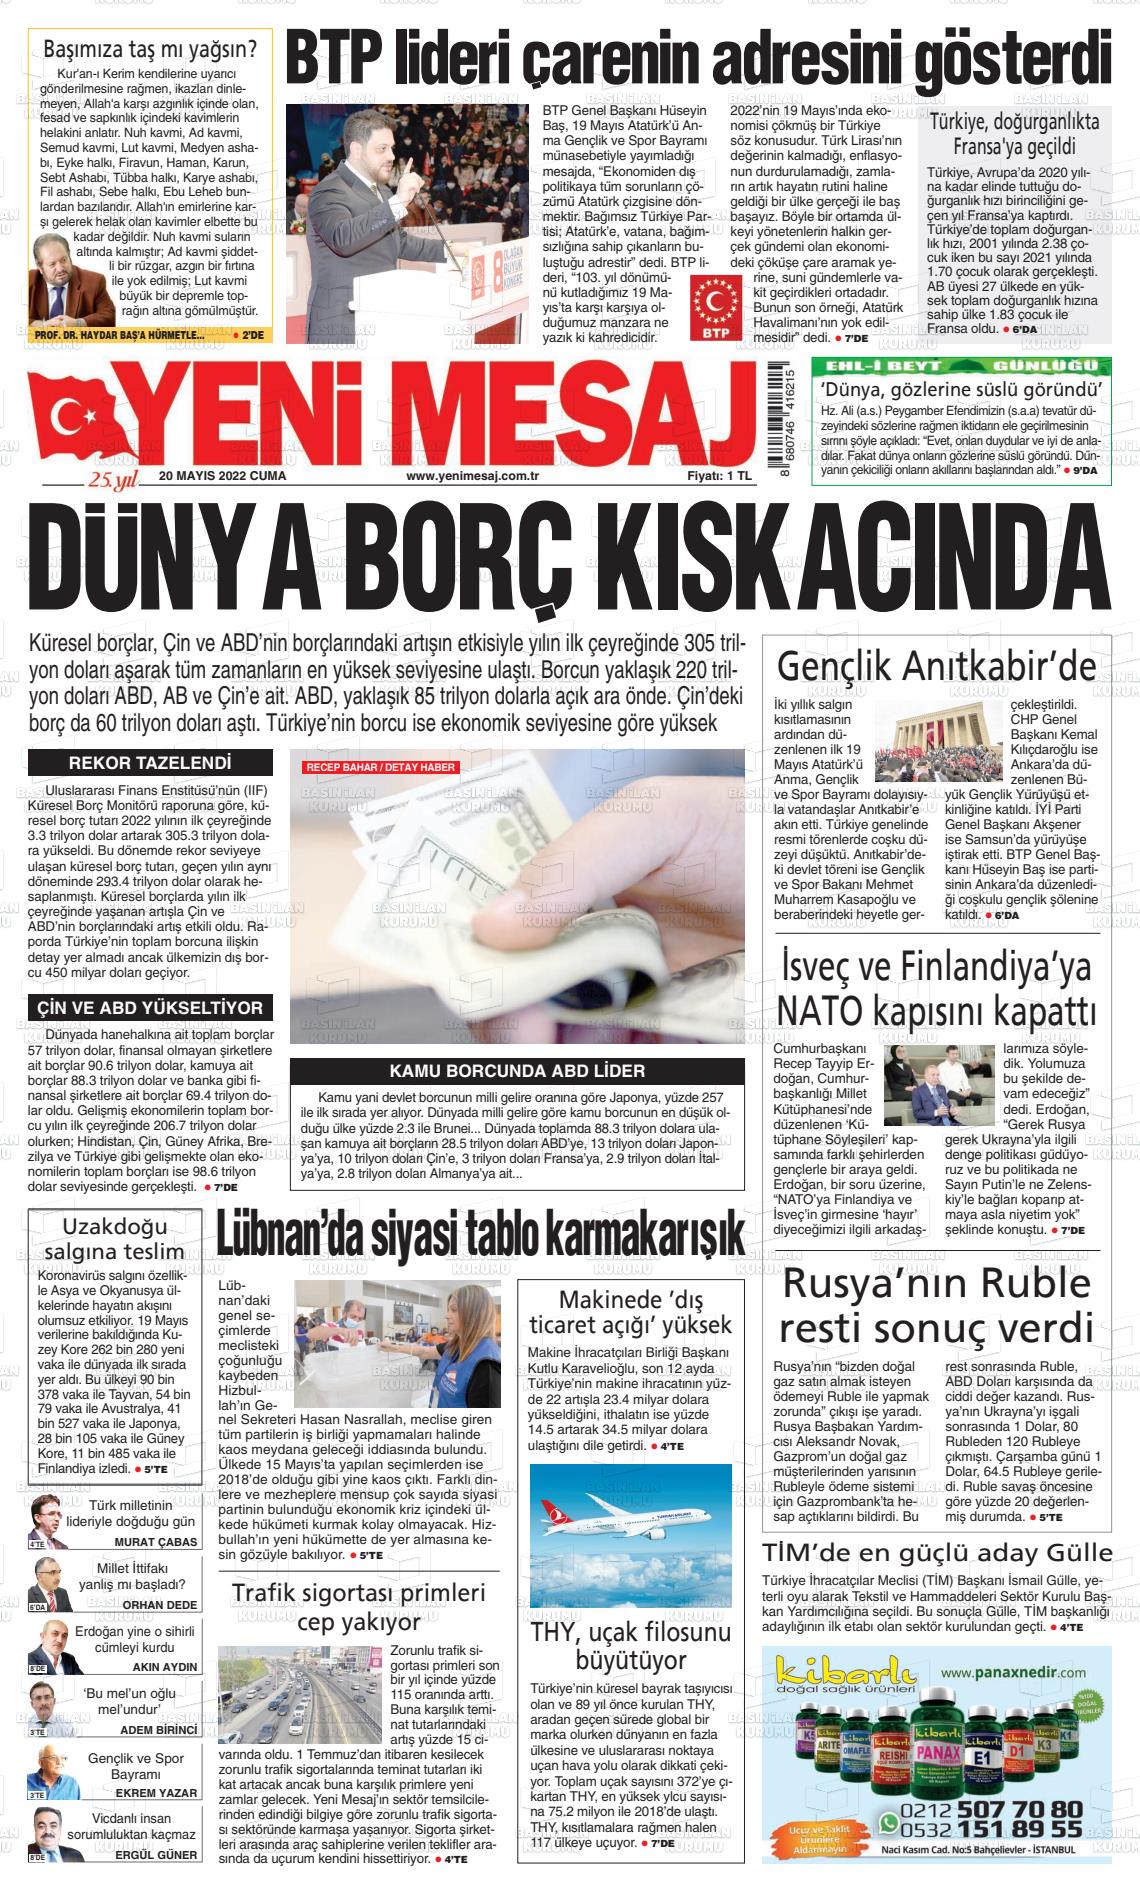 20 Mayıs 2022 Yeni Mesaj Gazete Manşeti